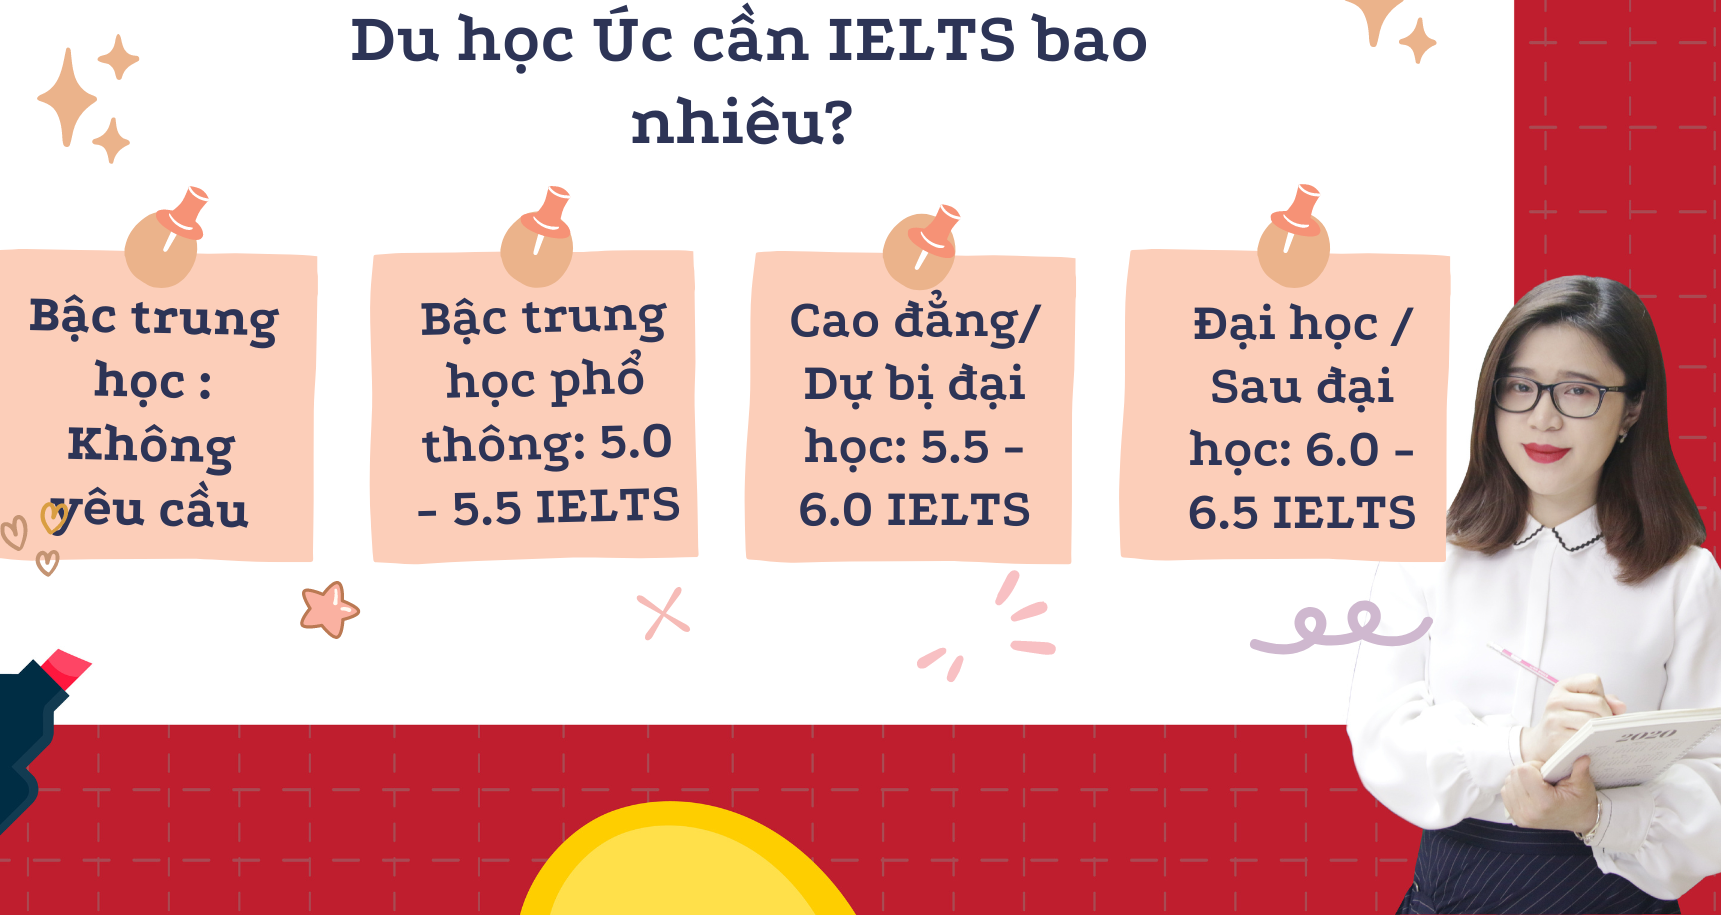 Du học Úc cần IELTS bao nhiêu? Thông tin update mới, chuẩn nhất